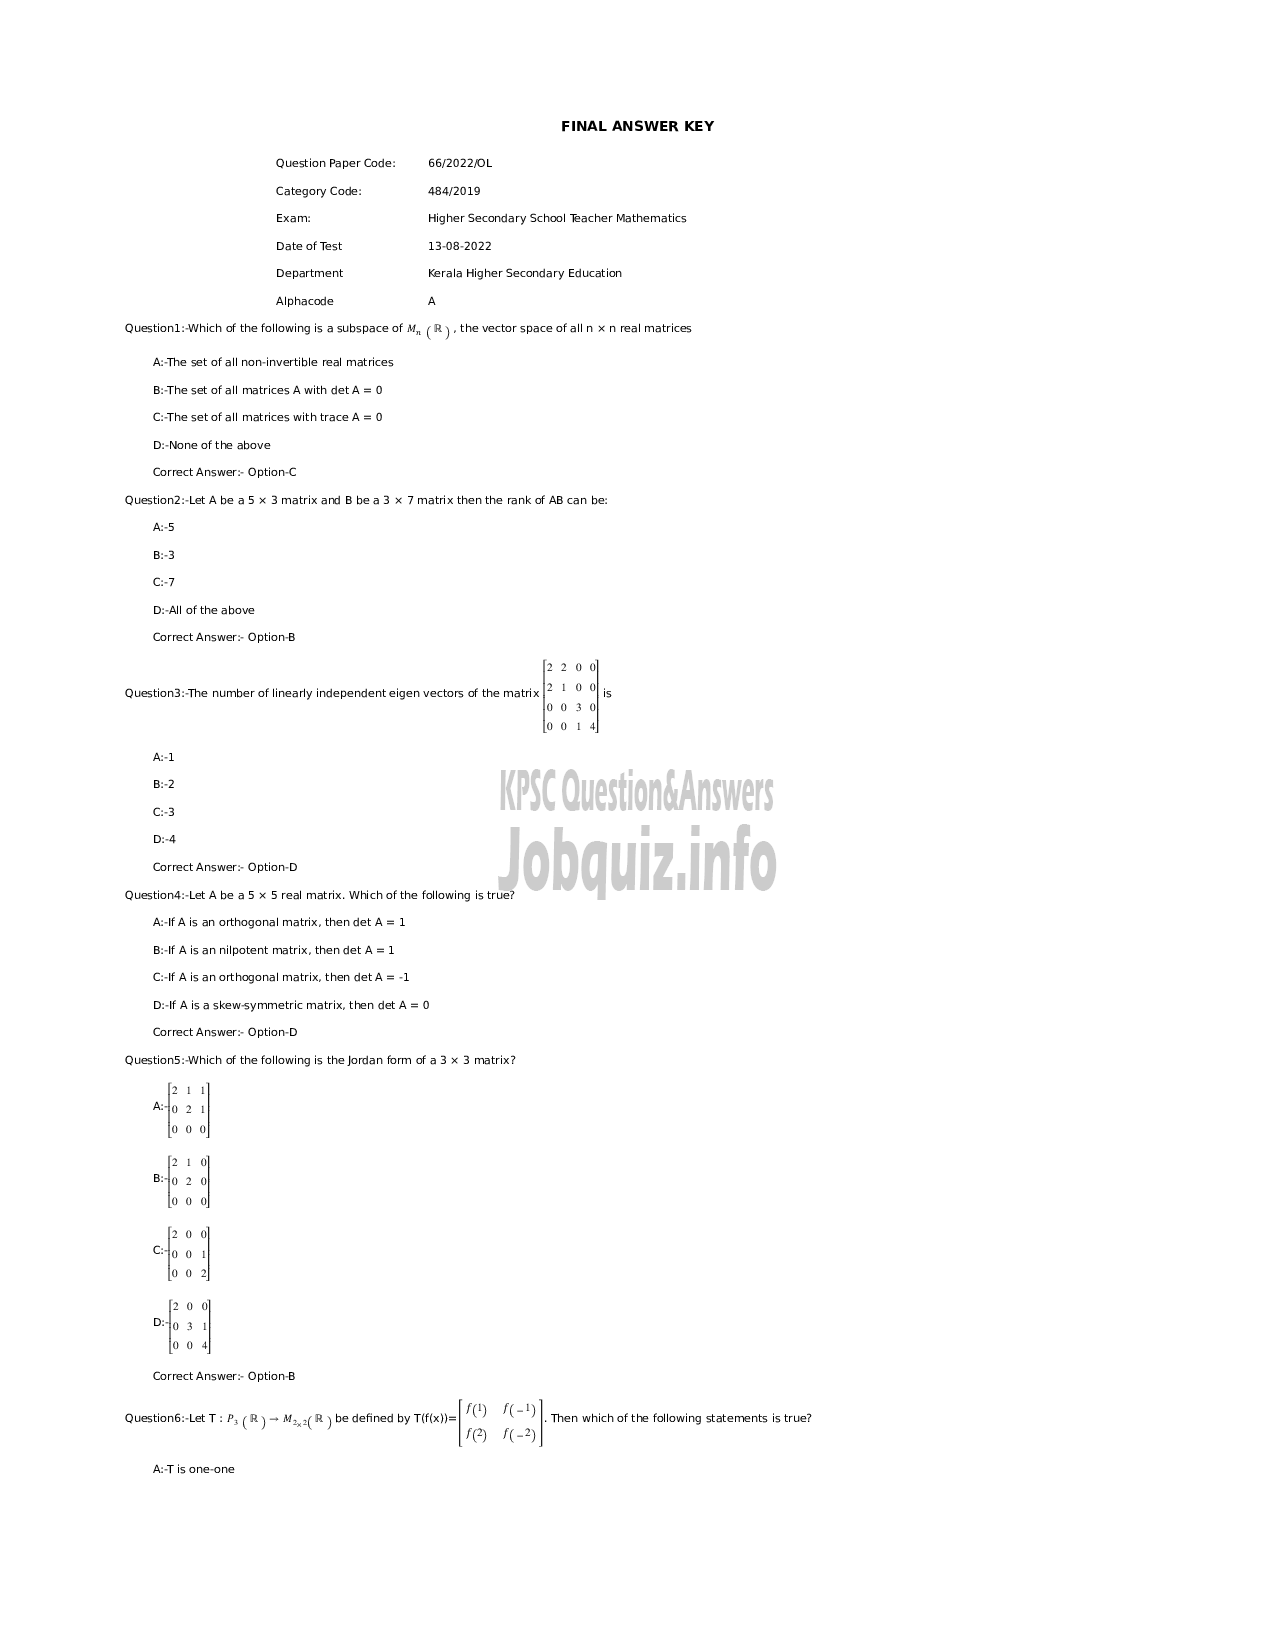 Kerala PSC Question Paper - Higher Secondary School Teacher Mathematics  -1